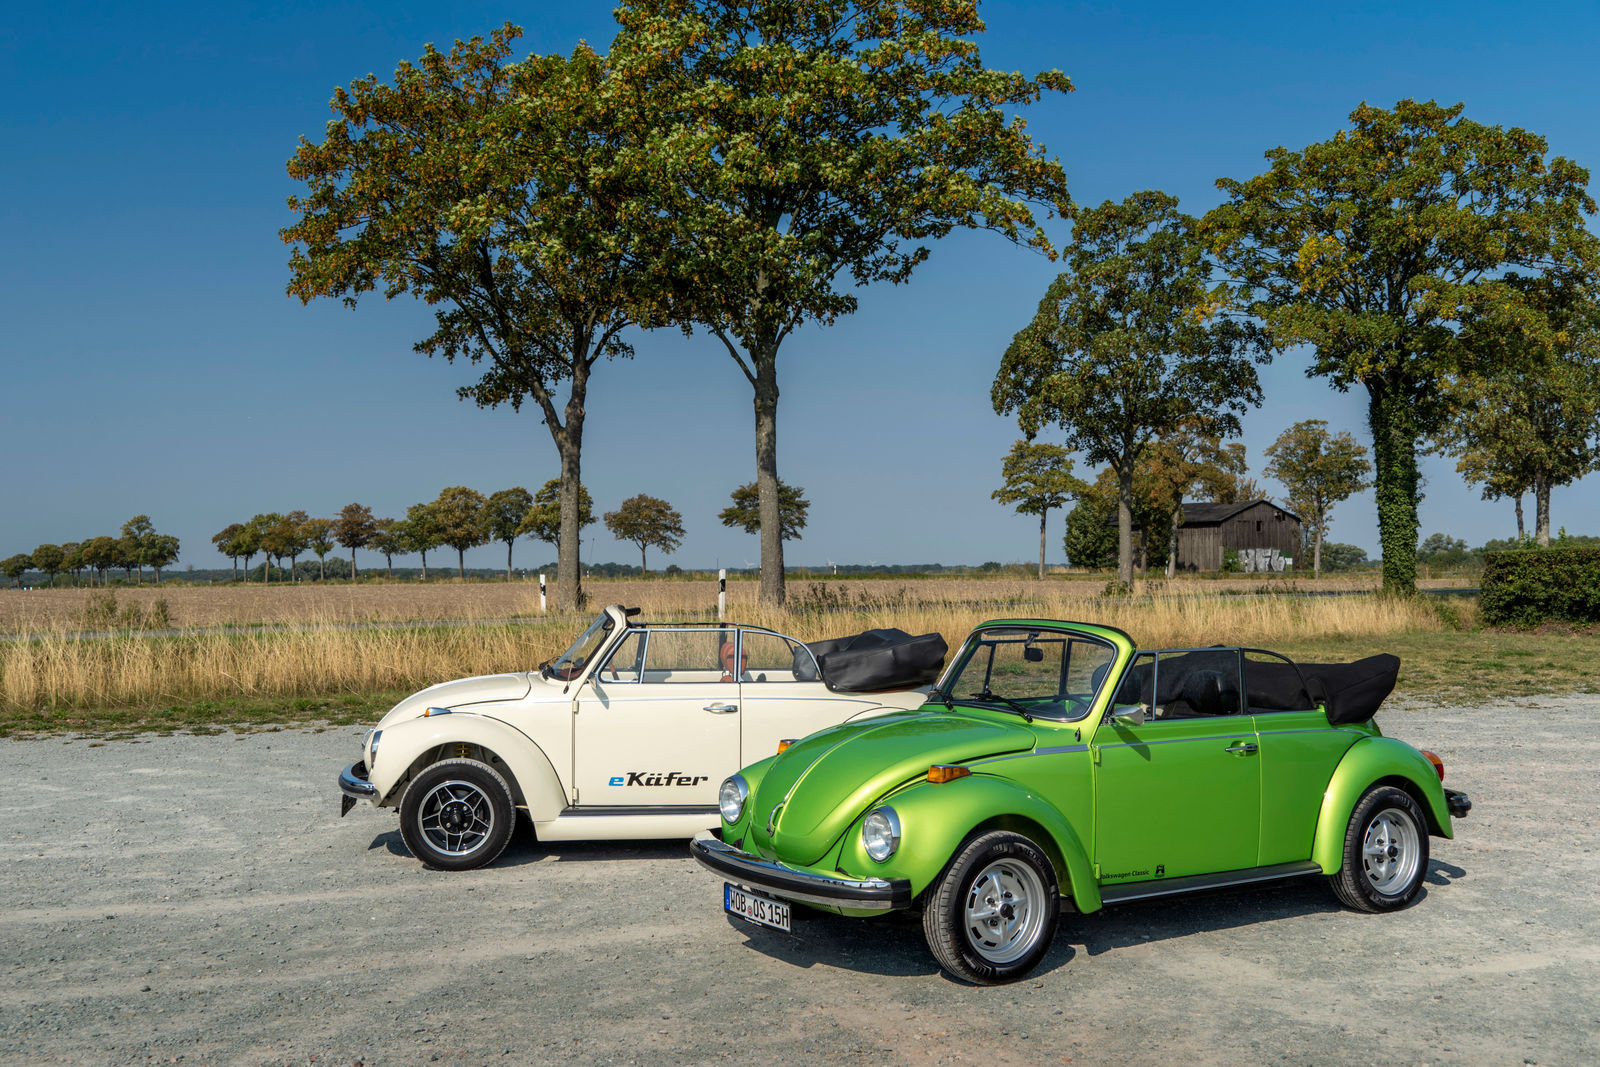 Der e-Käfer und ein grüner Käfer mit Boxermotor